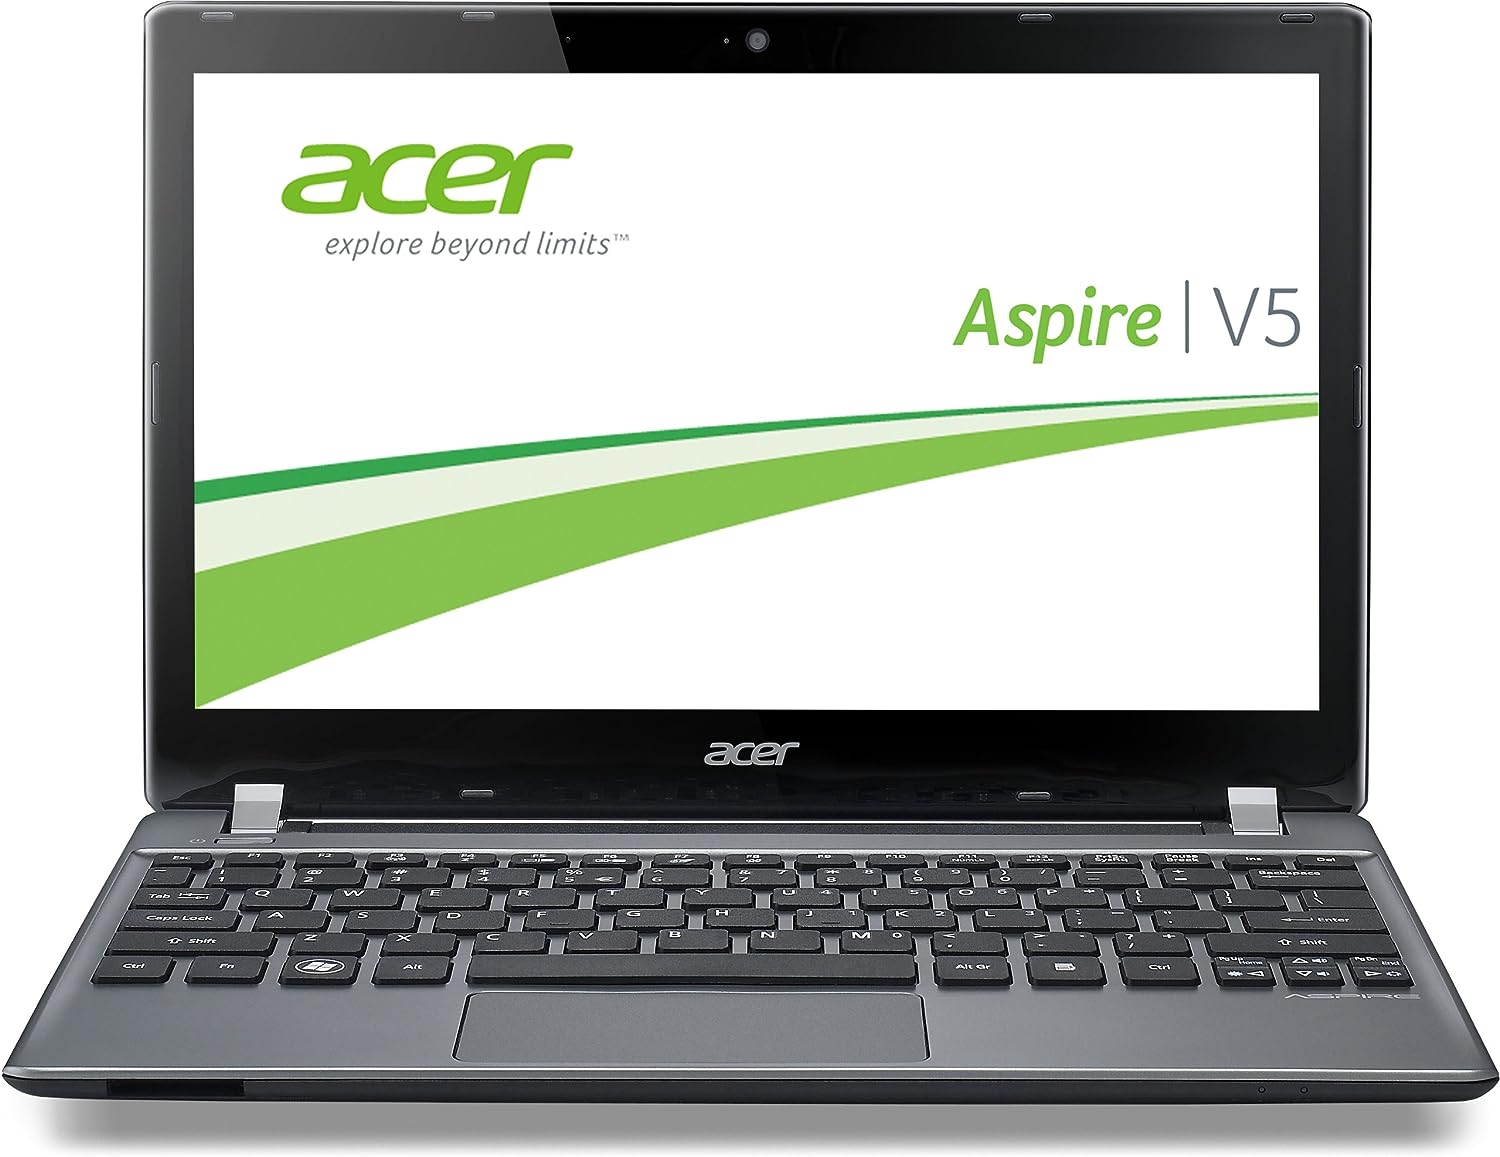 Acer Aspire V5-572 Notebook